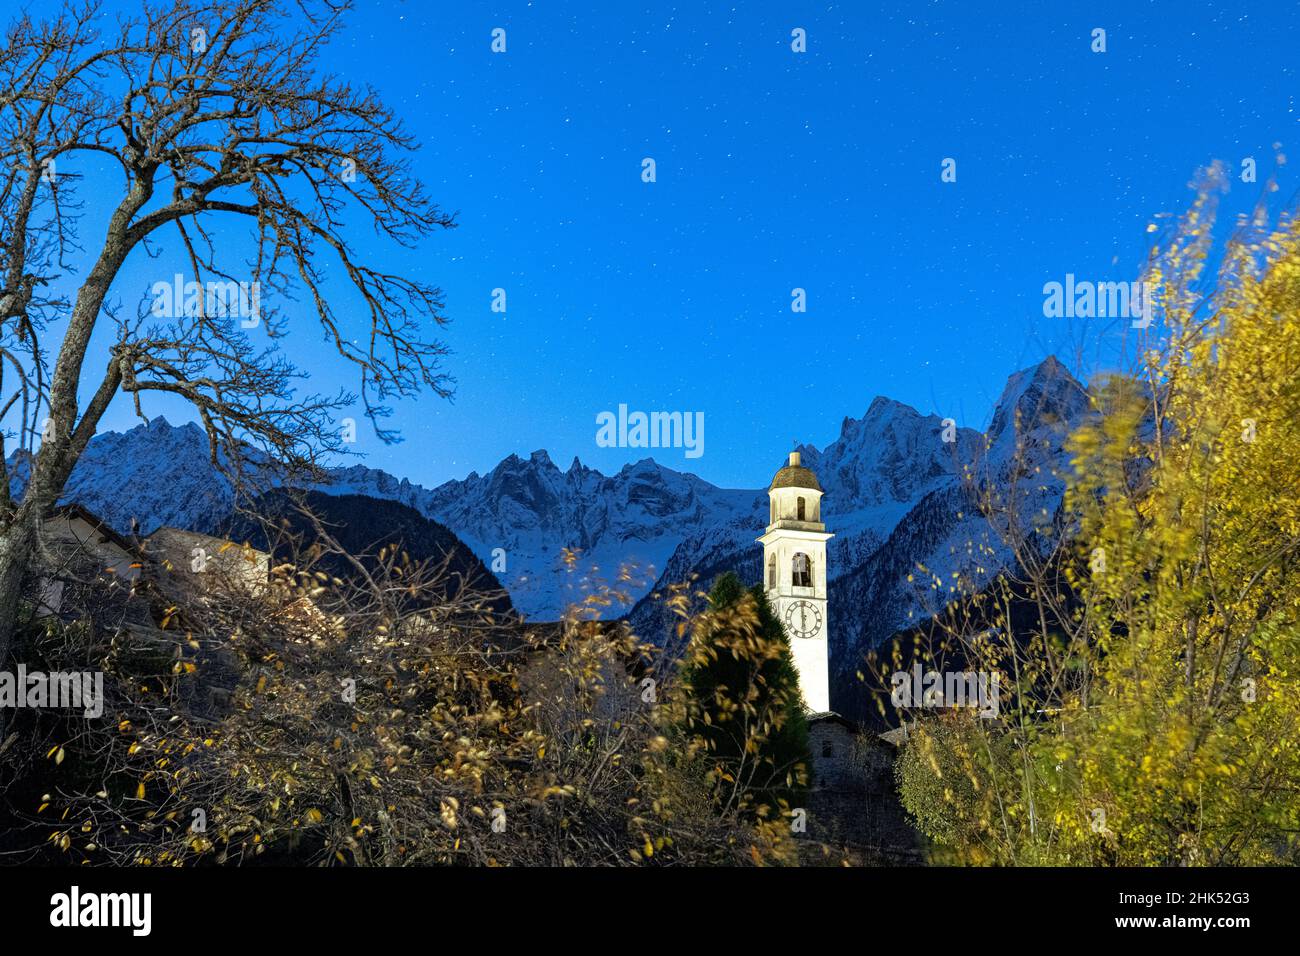 Sternenklare Nacht auf den schneebedeckten Gipfeln des Piz Badile und des Cengalo, eingerahmt vom Glockenturm, Soglio, Kanton Graubünden, Schweiz, Europa Stockfoto